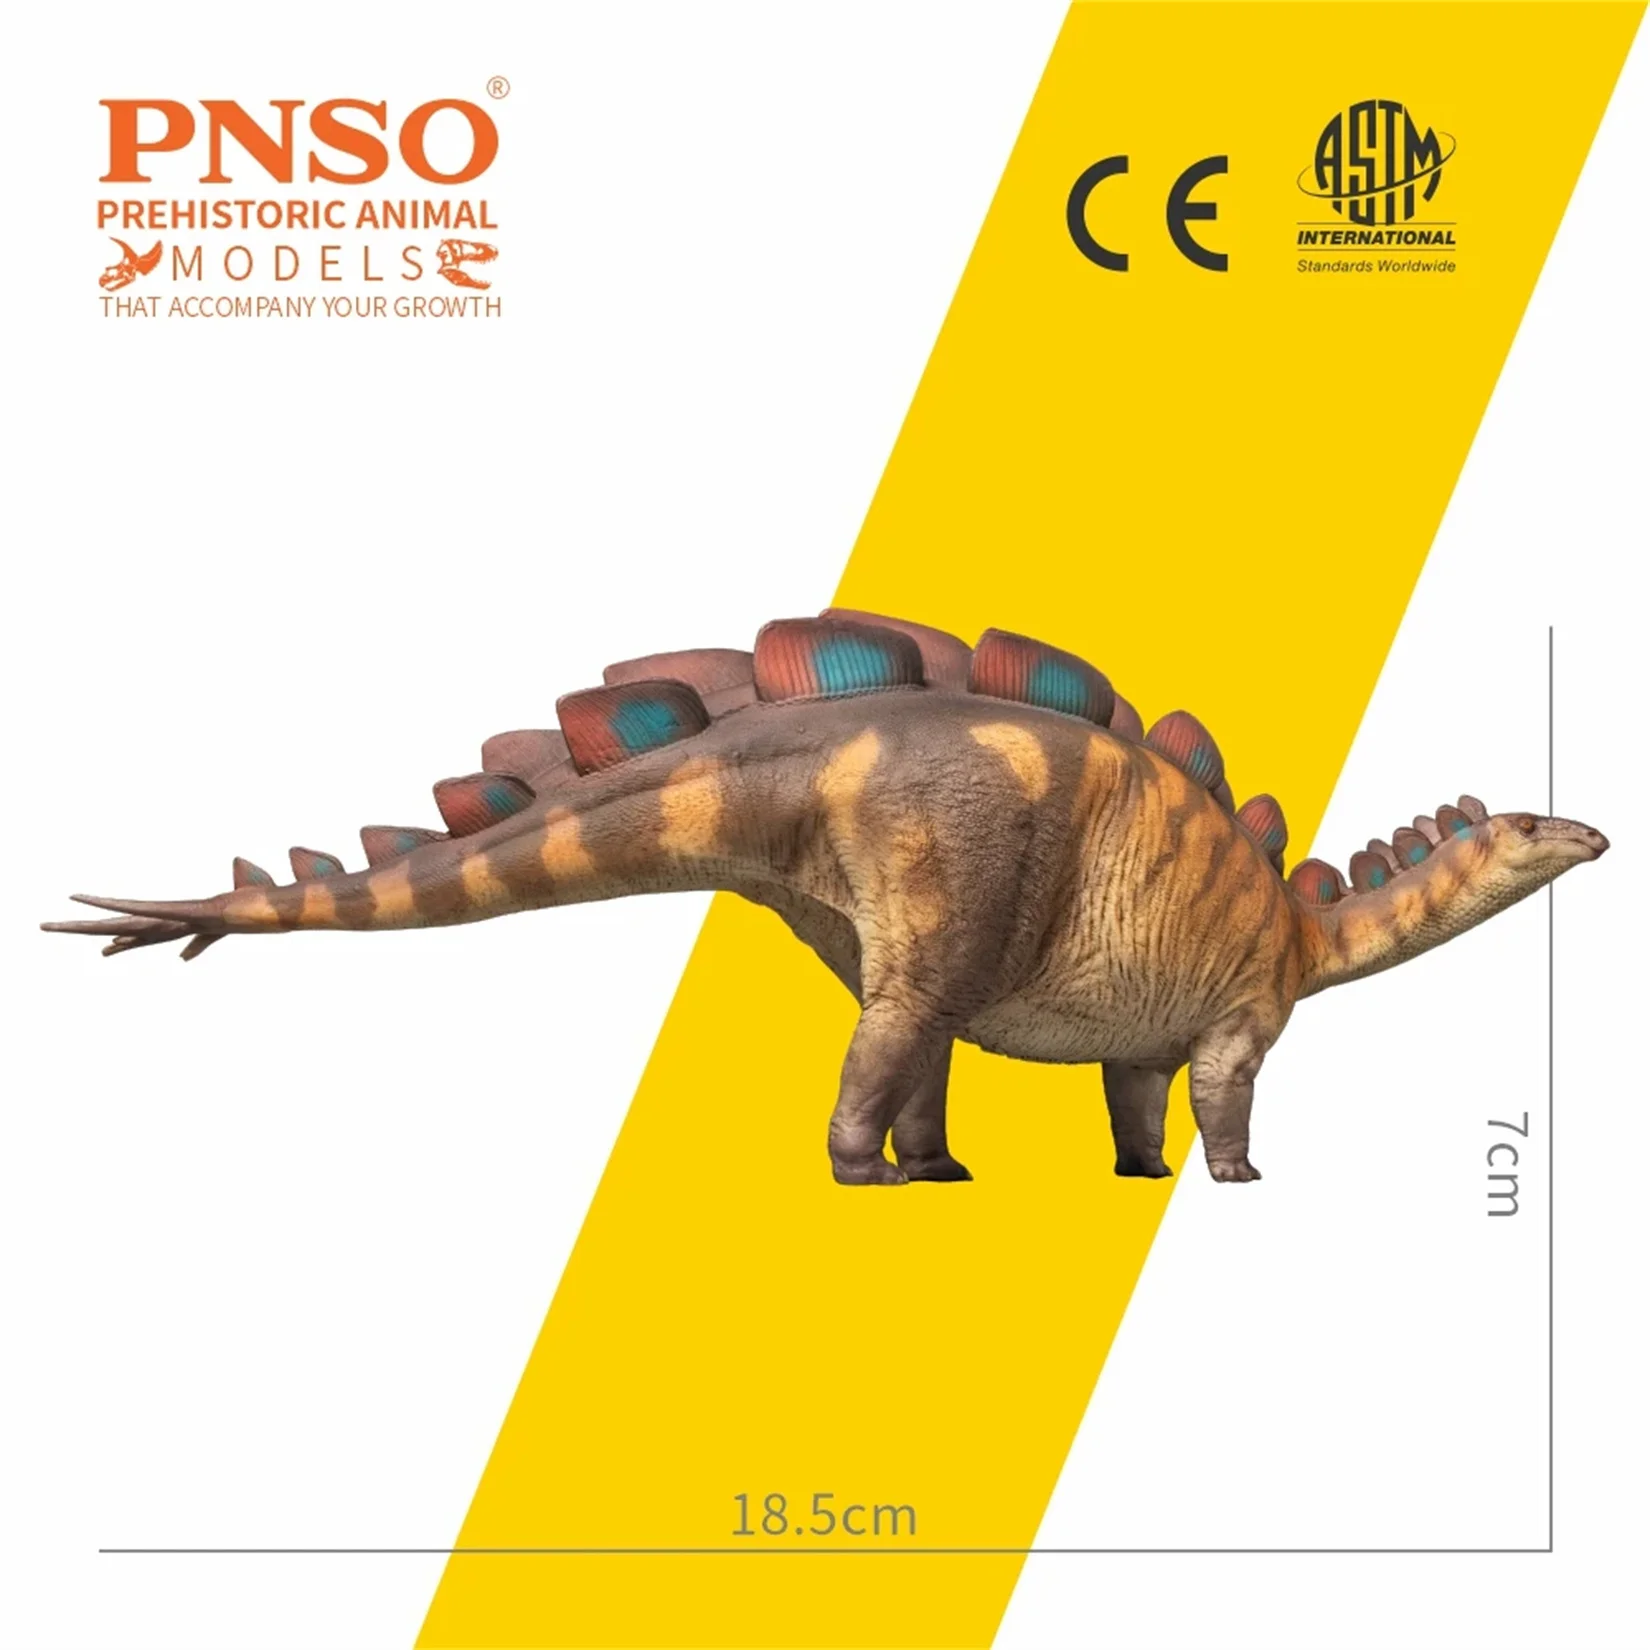 PNSO 82 Wuerhosaurus Xilin modelo Stegosauridae dinosaurio escena Animal prehistórica decoración regalo colección estatua científica